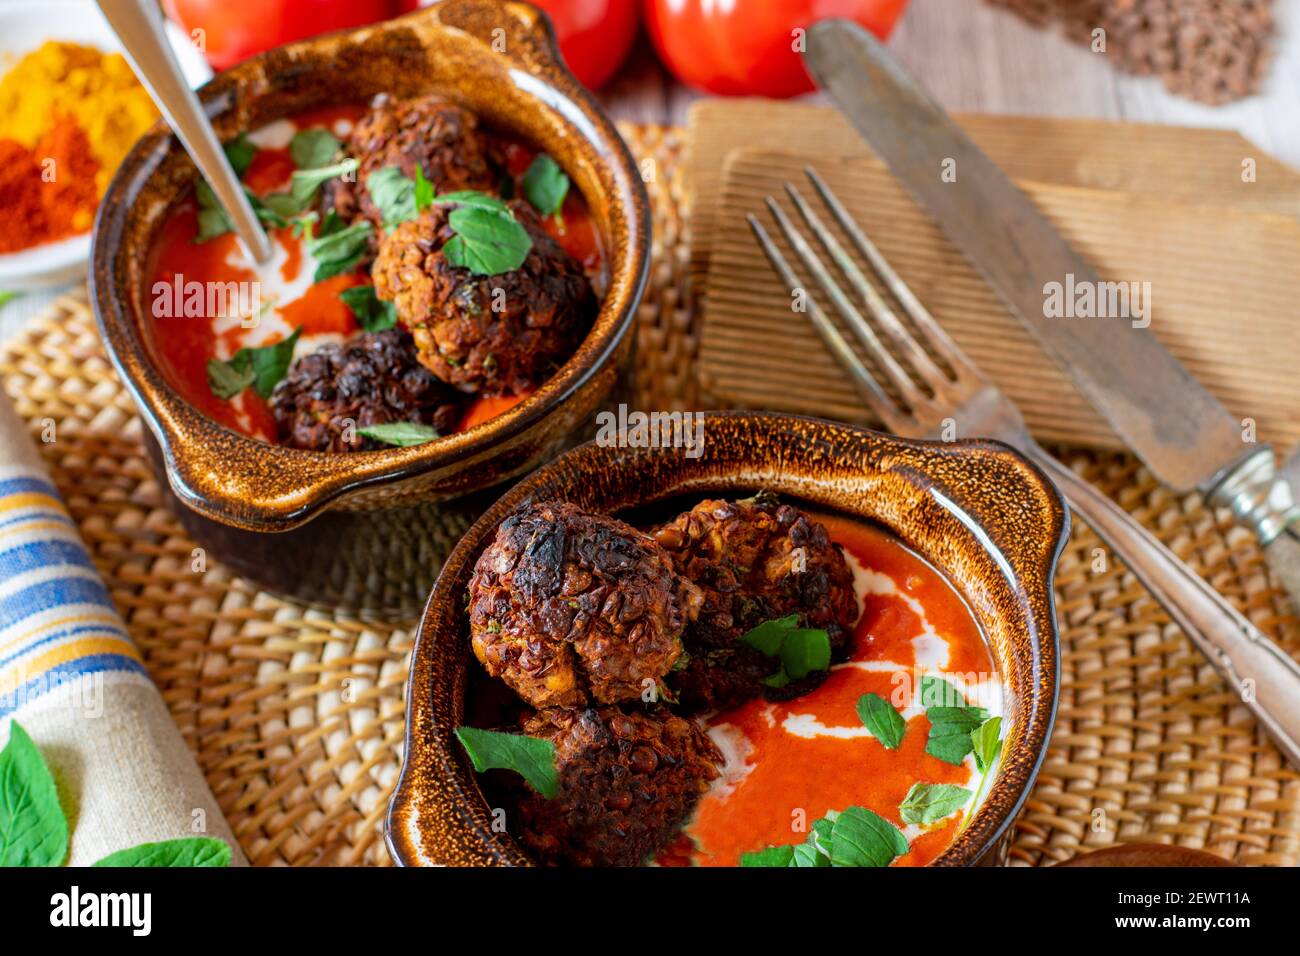 Veganes Gericht mit orientalisch würziger Tomatensuppe und Linsennüssen Fleischbällchen serviert in rustikalen braunen Schalen mit Kokosmilch gekrönt Stockfoto